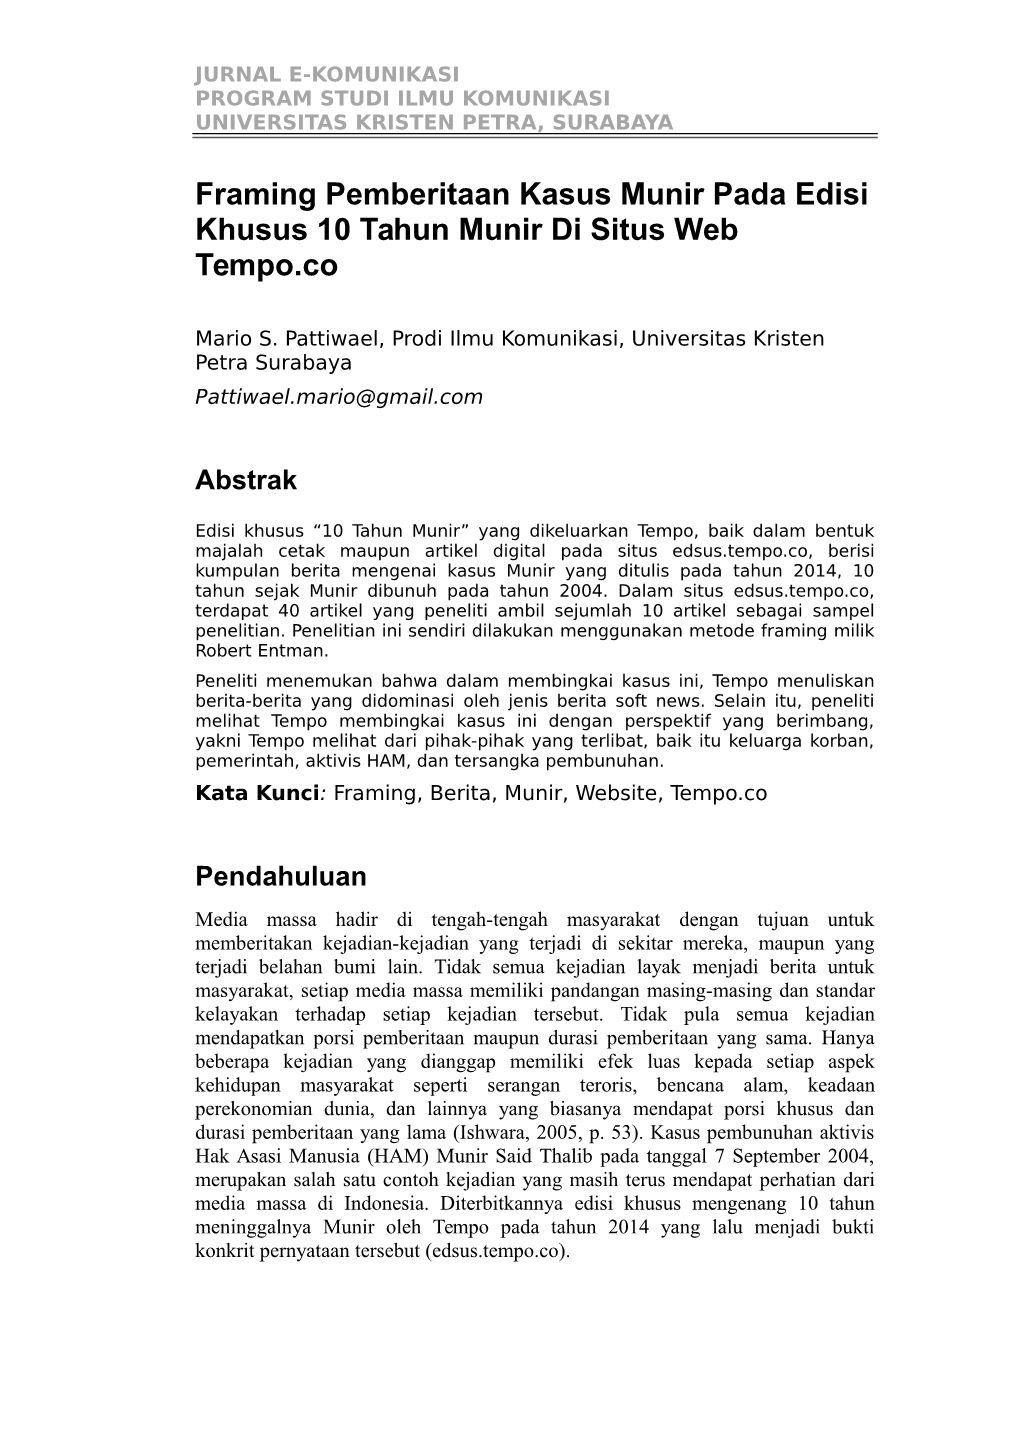 Framing Pemberitaan Kasus Munir Pada Edisi Khusus 10 Tahun Munir Di Situs Web Tempo.Co